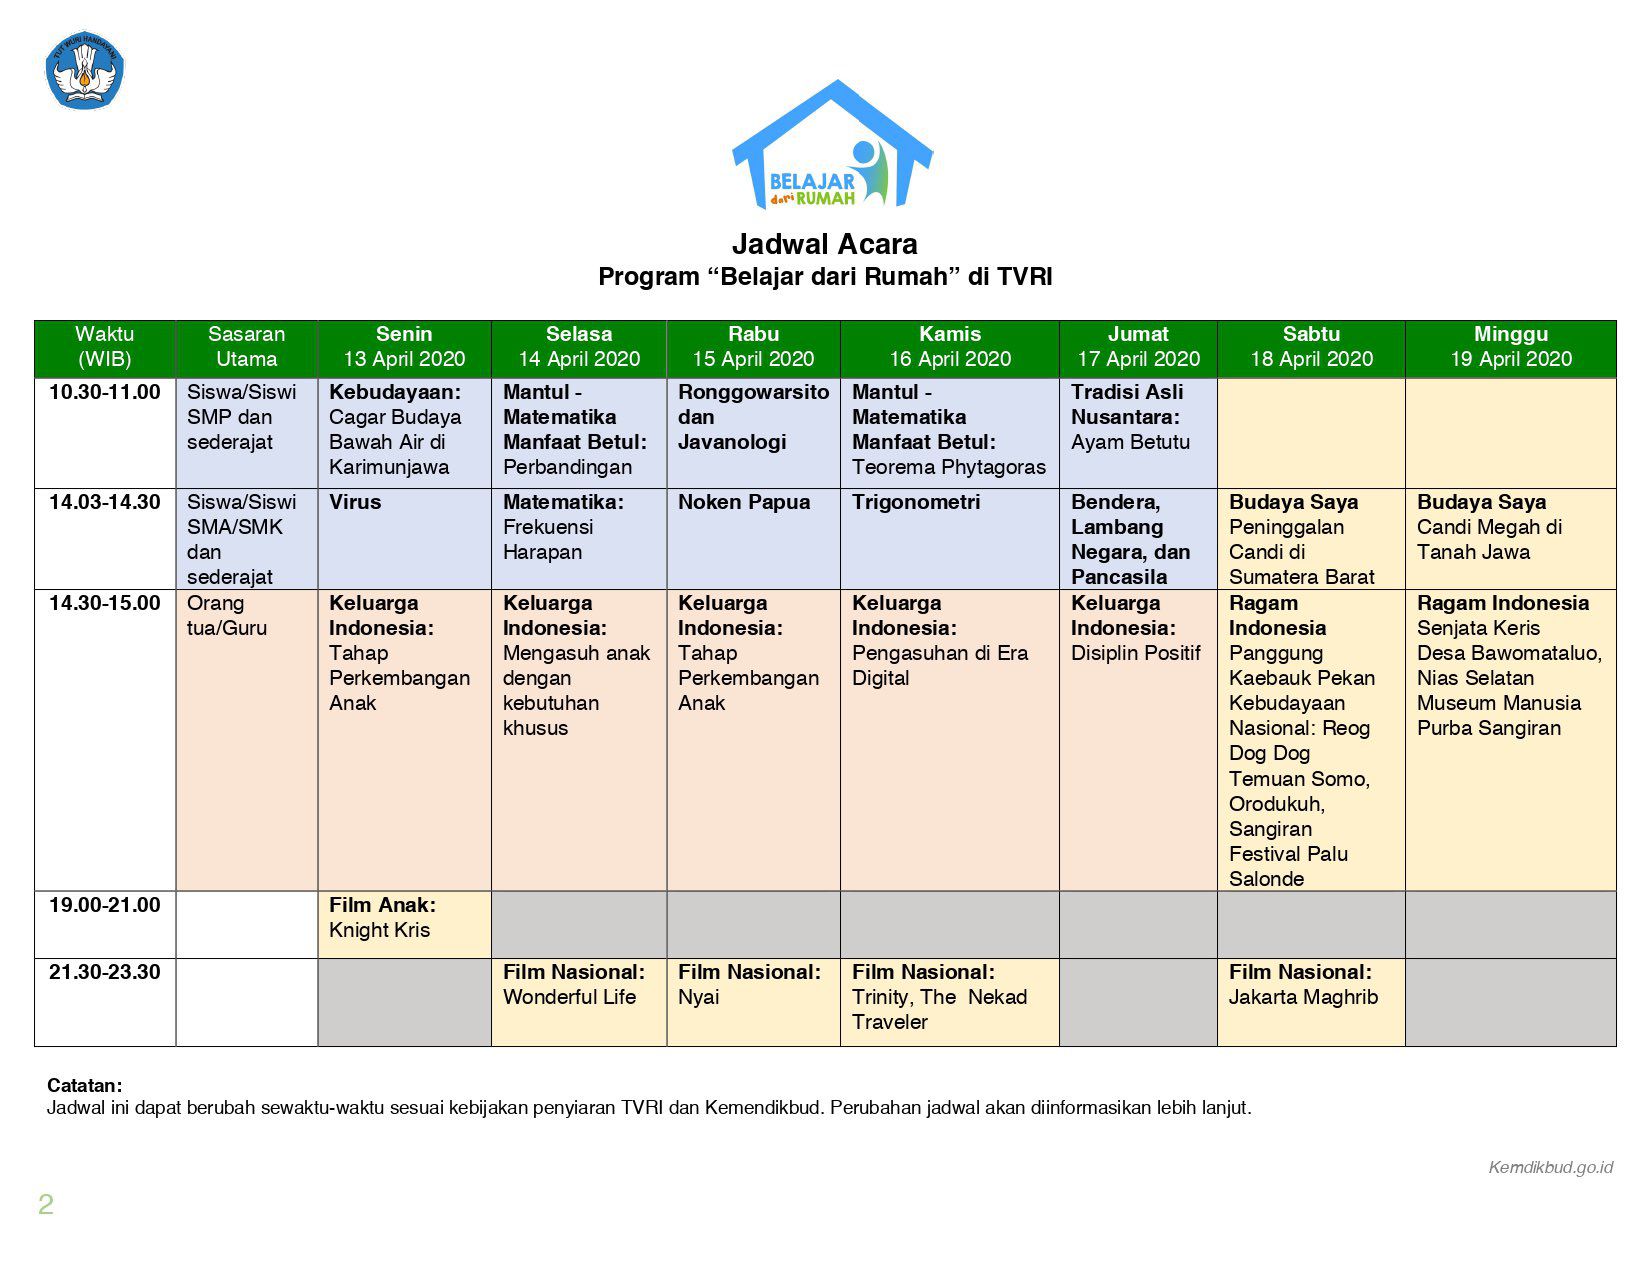 Jadwal program 'Belajar dari Rumah'